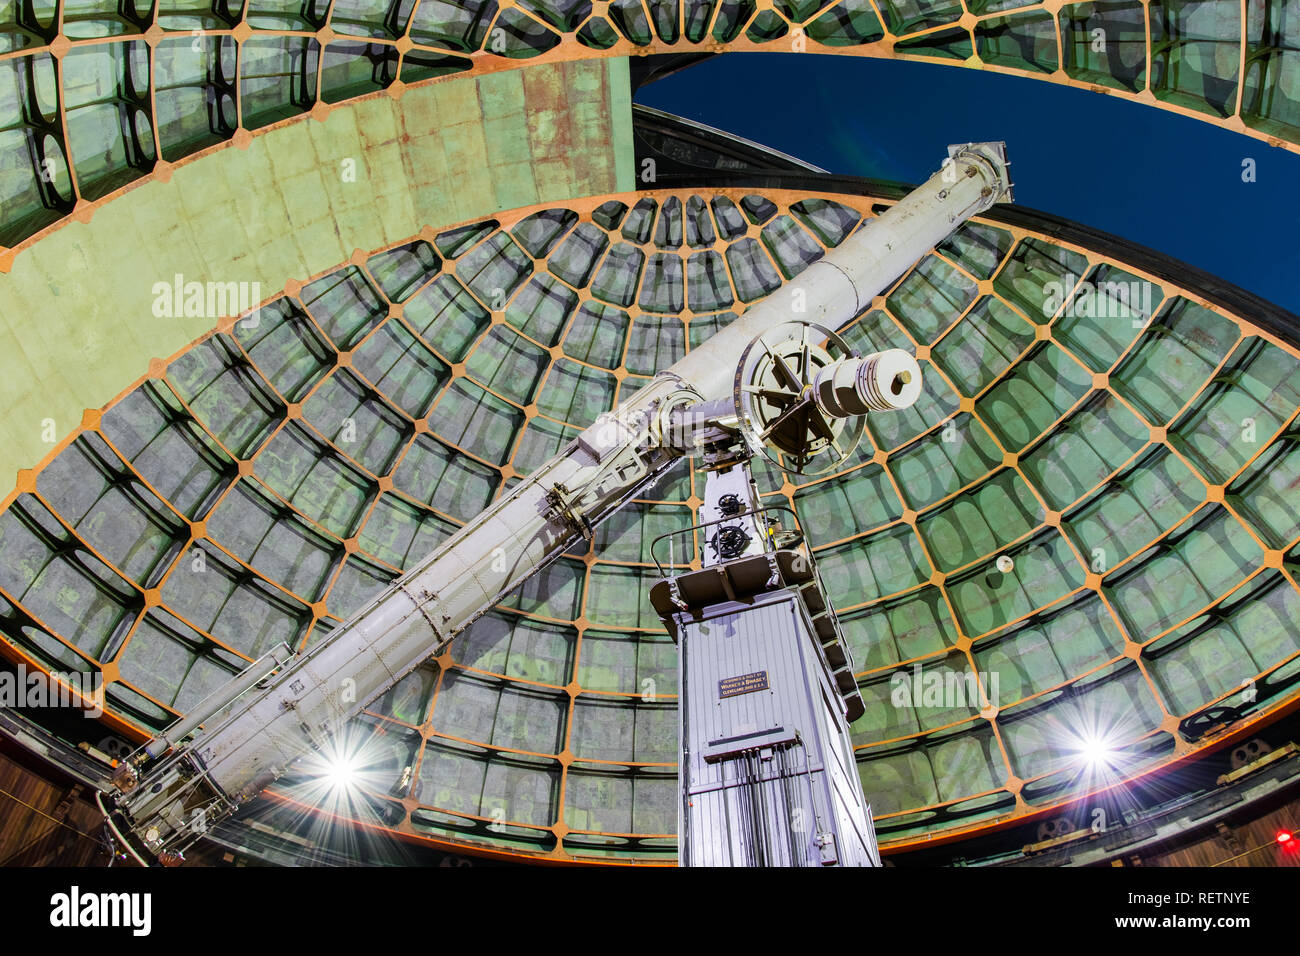 19 mai 2018 San Jose / CA / USA - l'historique 36 pouces Shane telescope à l'Observatoire Lick, Mount Hamilton prêt pour l'affichage du ciel nocturne ; San Jose, s Banque D'Images